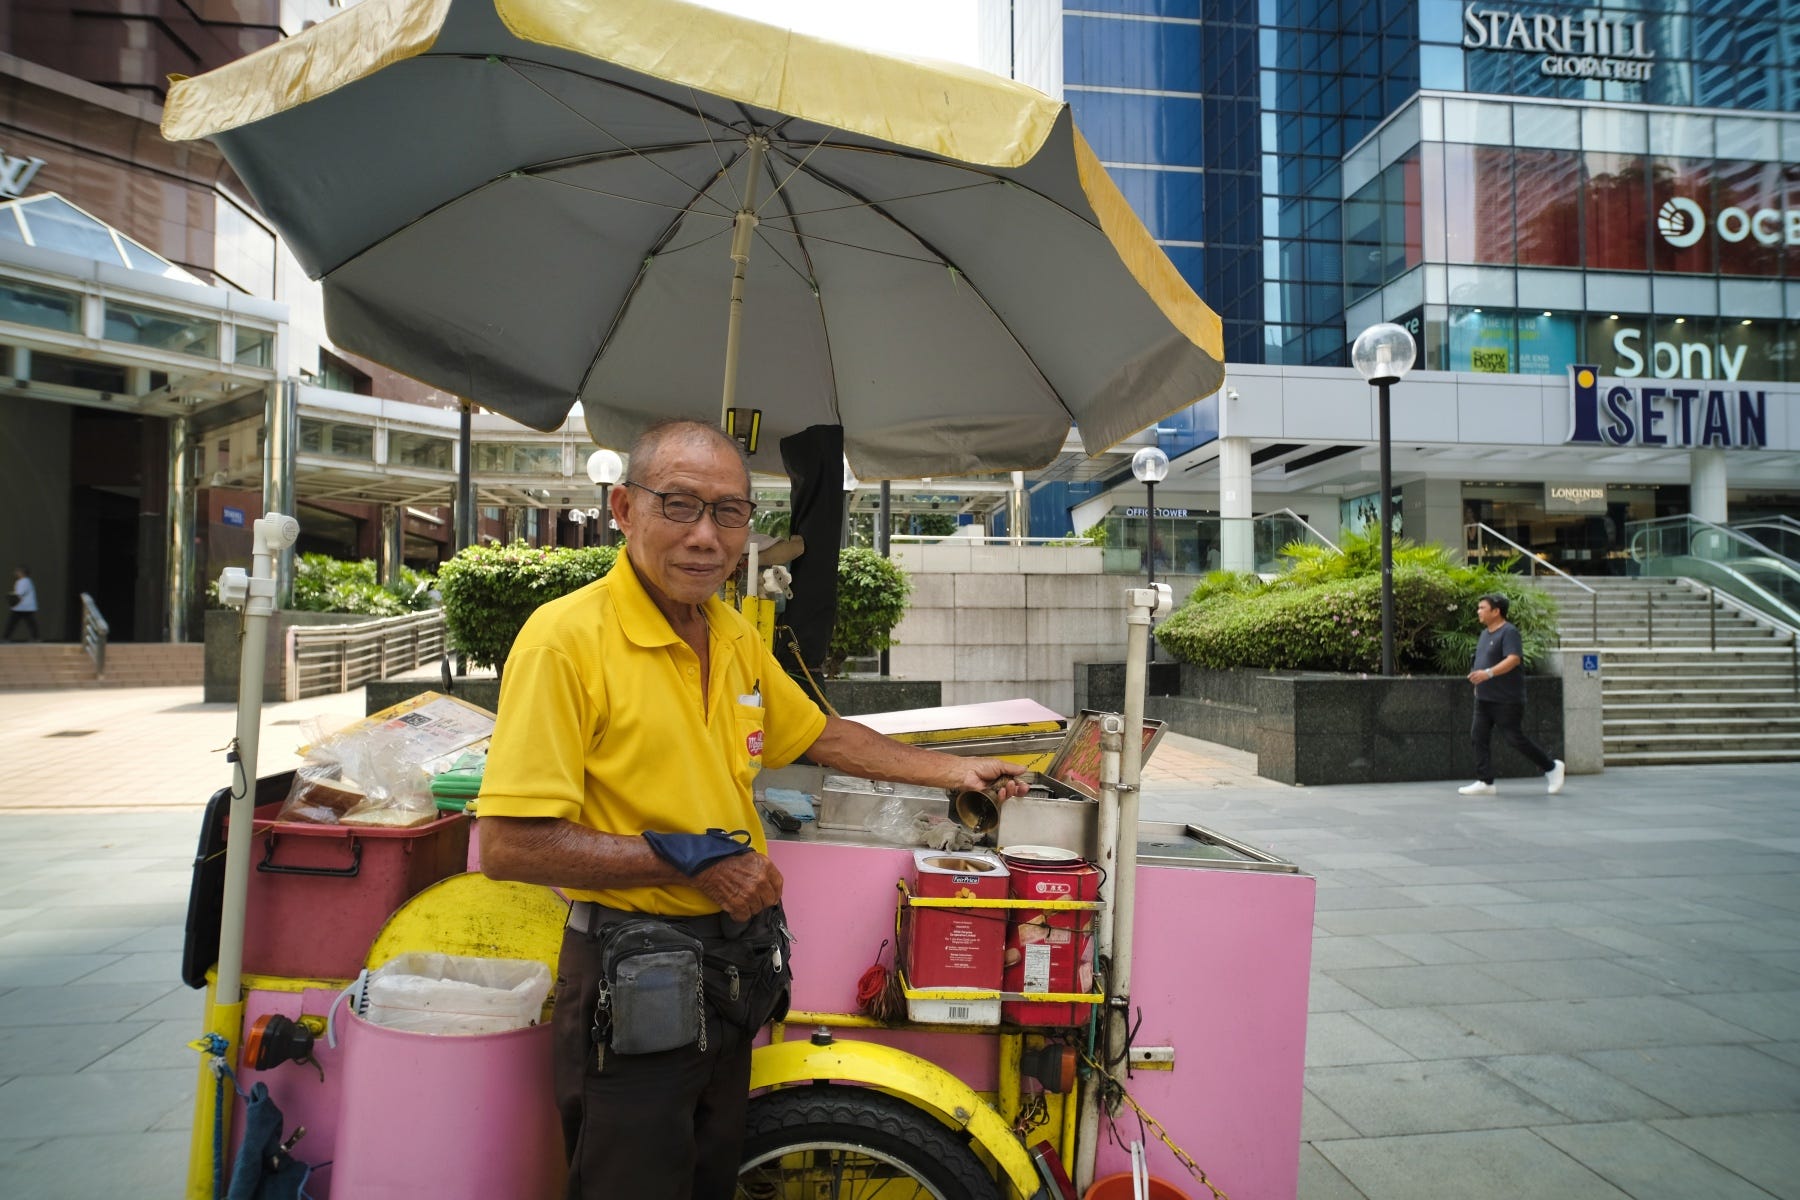 Ein älterer Eisverkäufer posiert neben seinem Eiswagen entlang der Orchard Road.